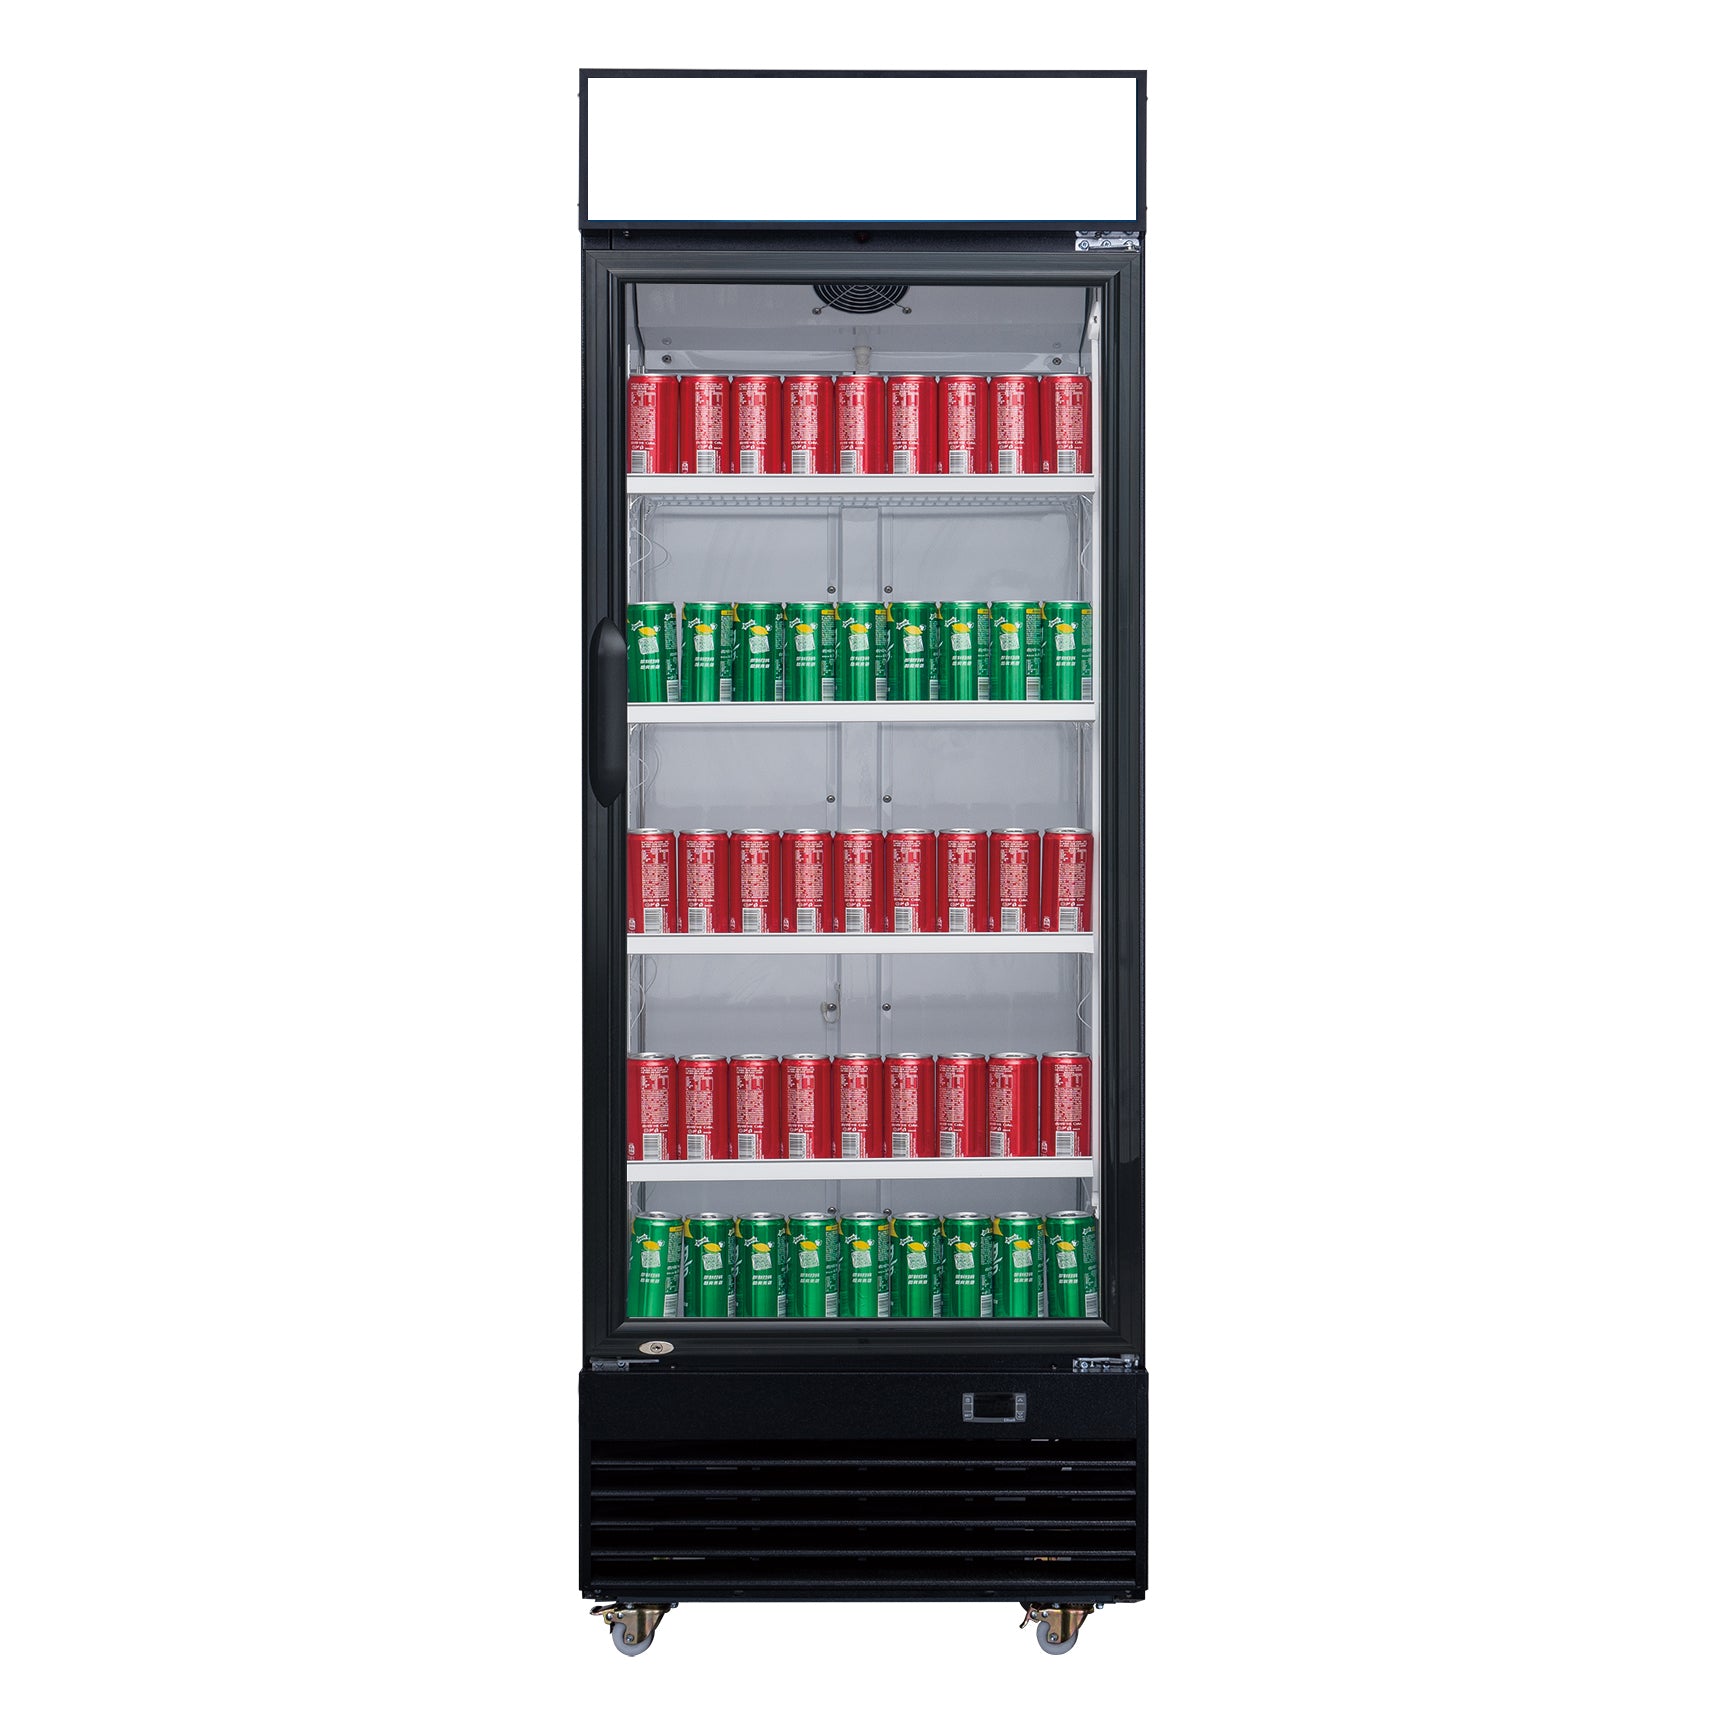 ChefAAA - TSM-15R Commercial Single Glass Swing Door Merchandiser Refrigerator